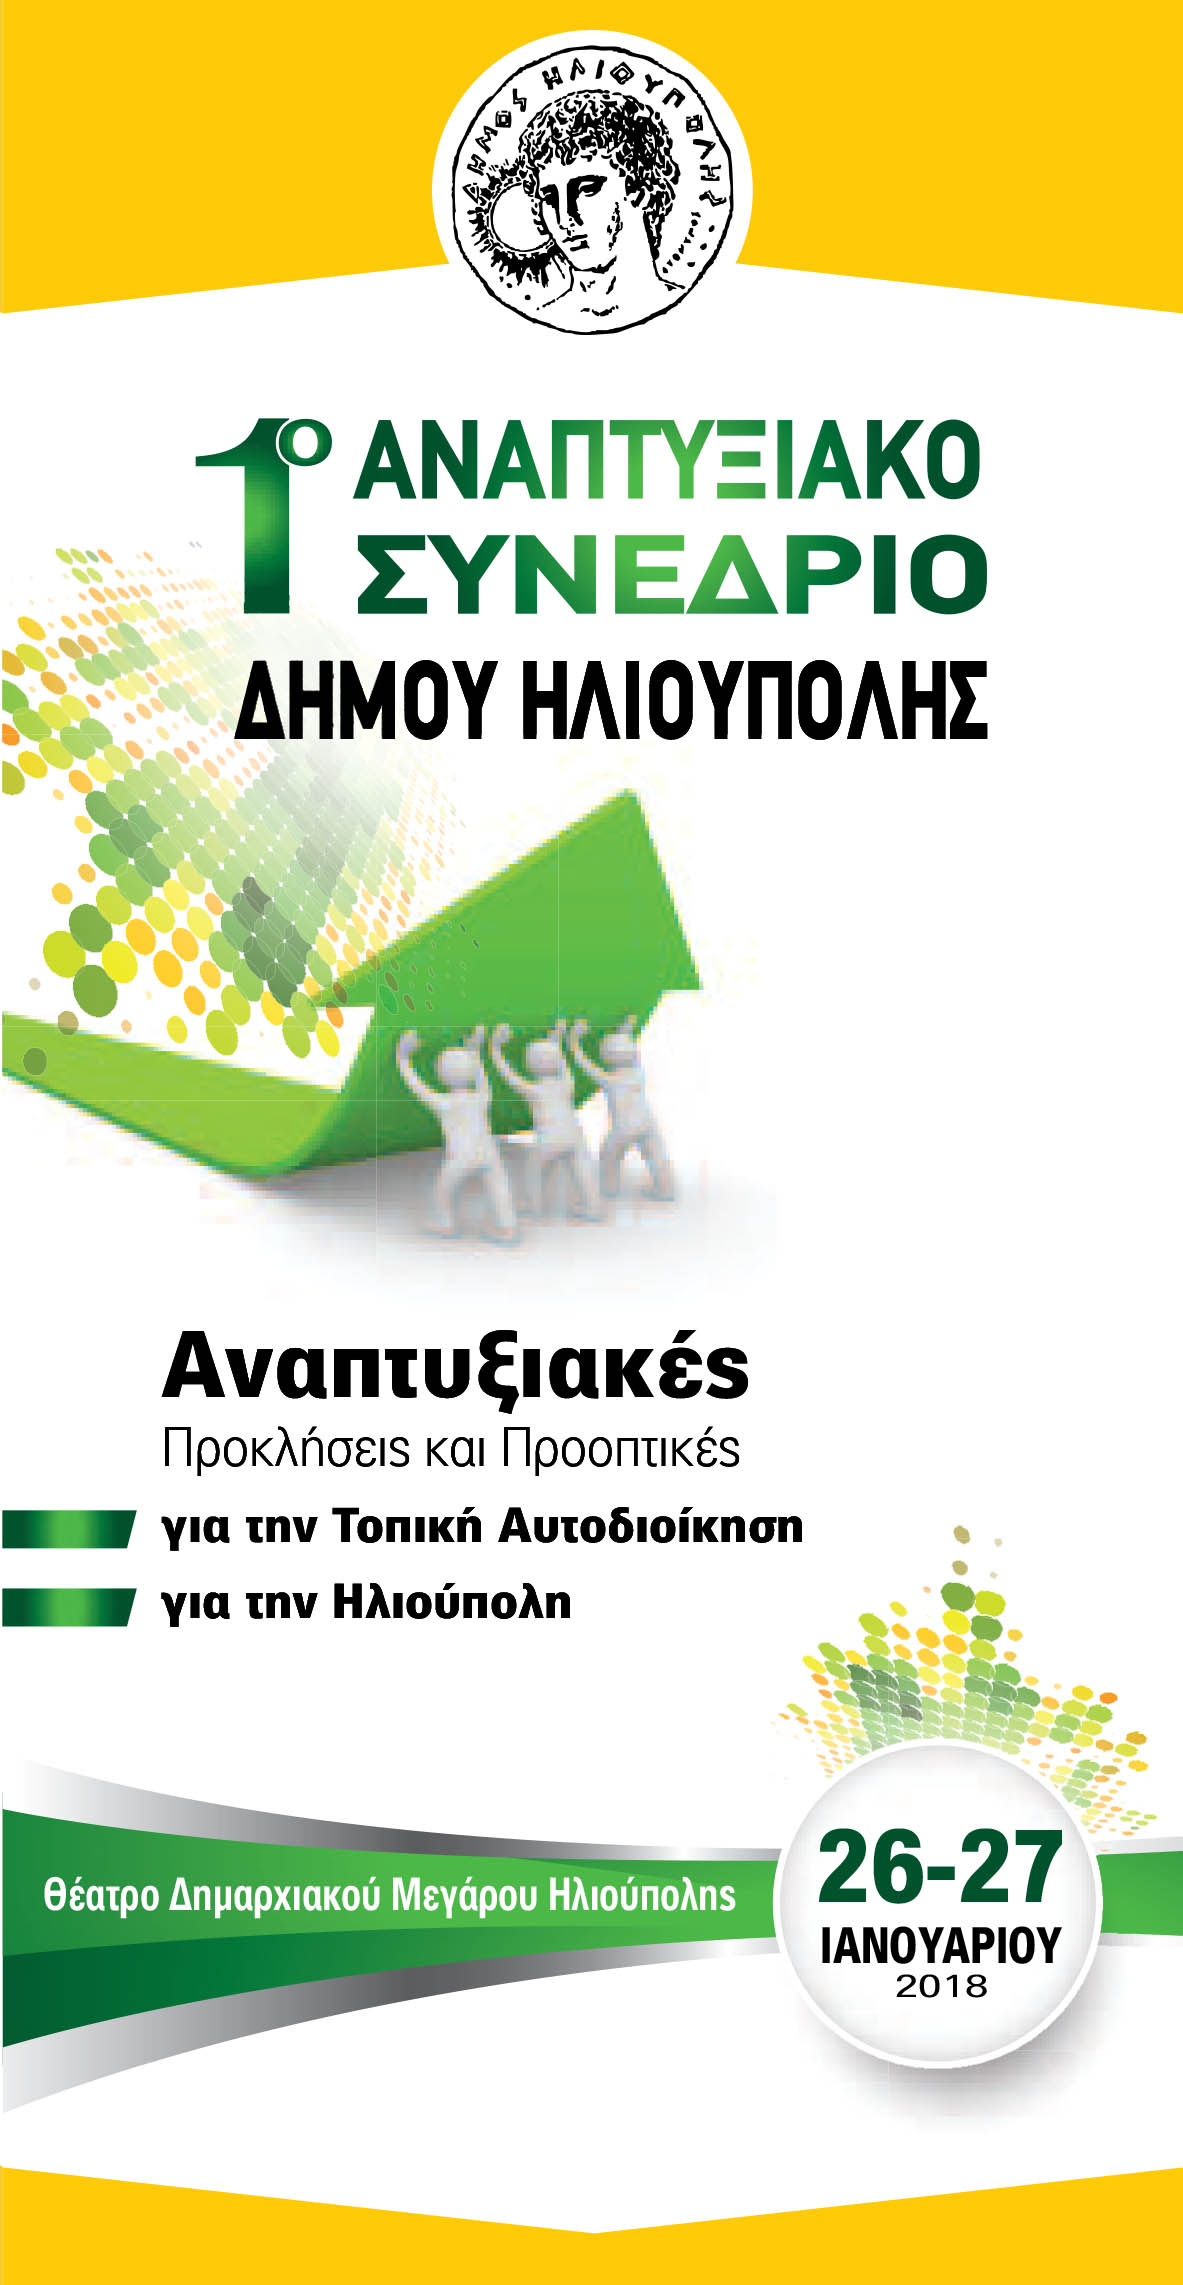 hlioupoly synedrio anaptyxiakoilioup